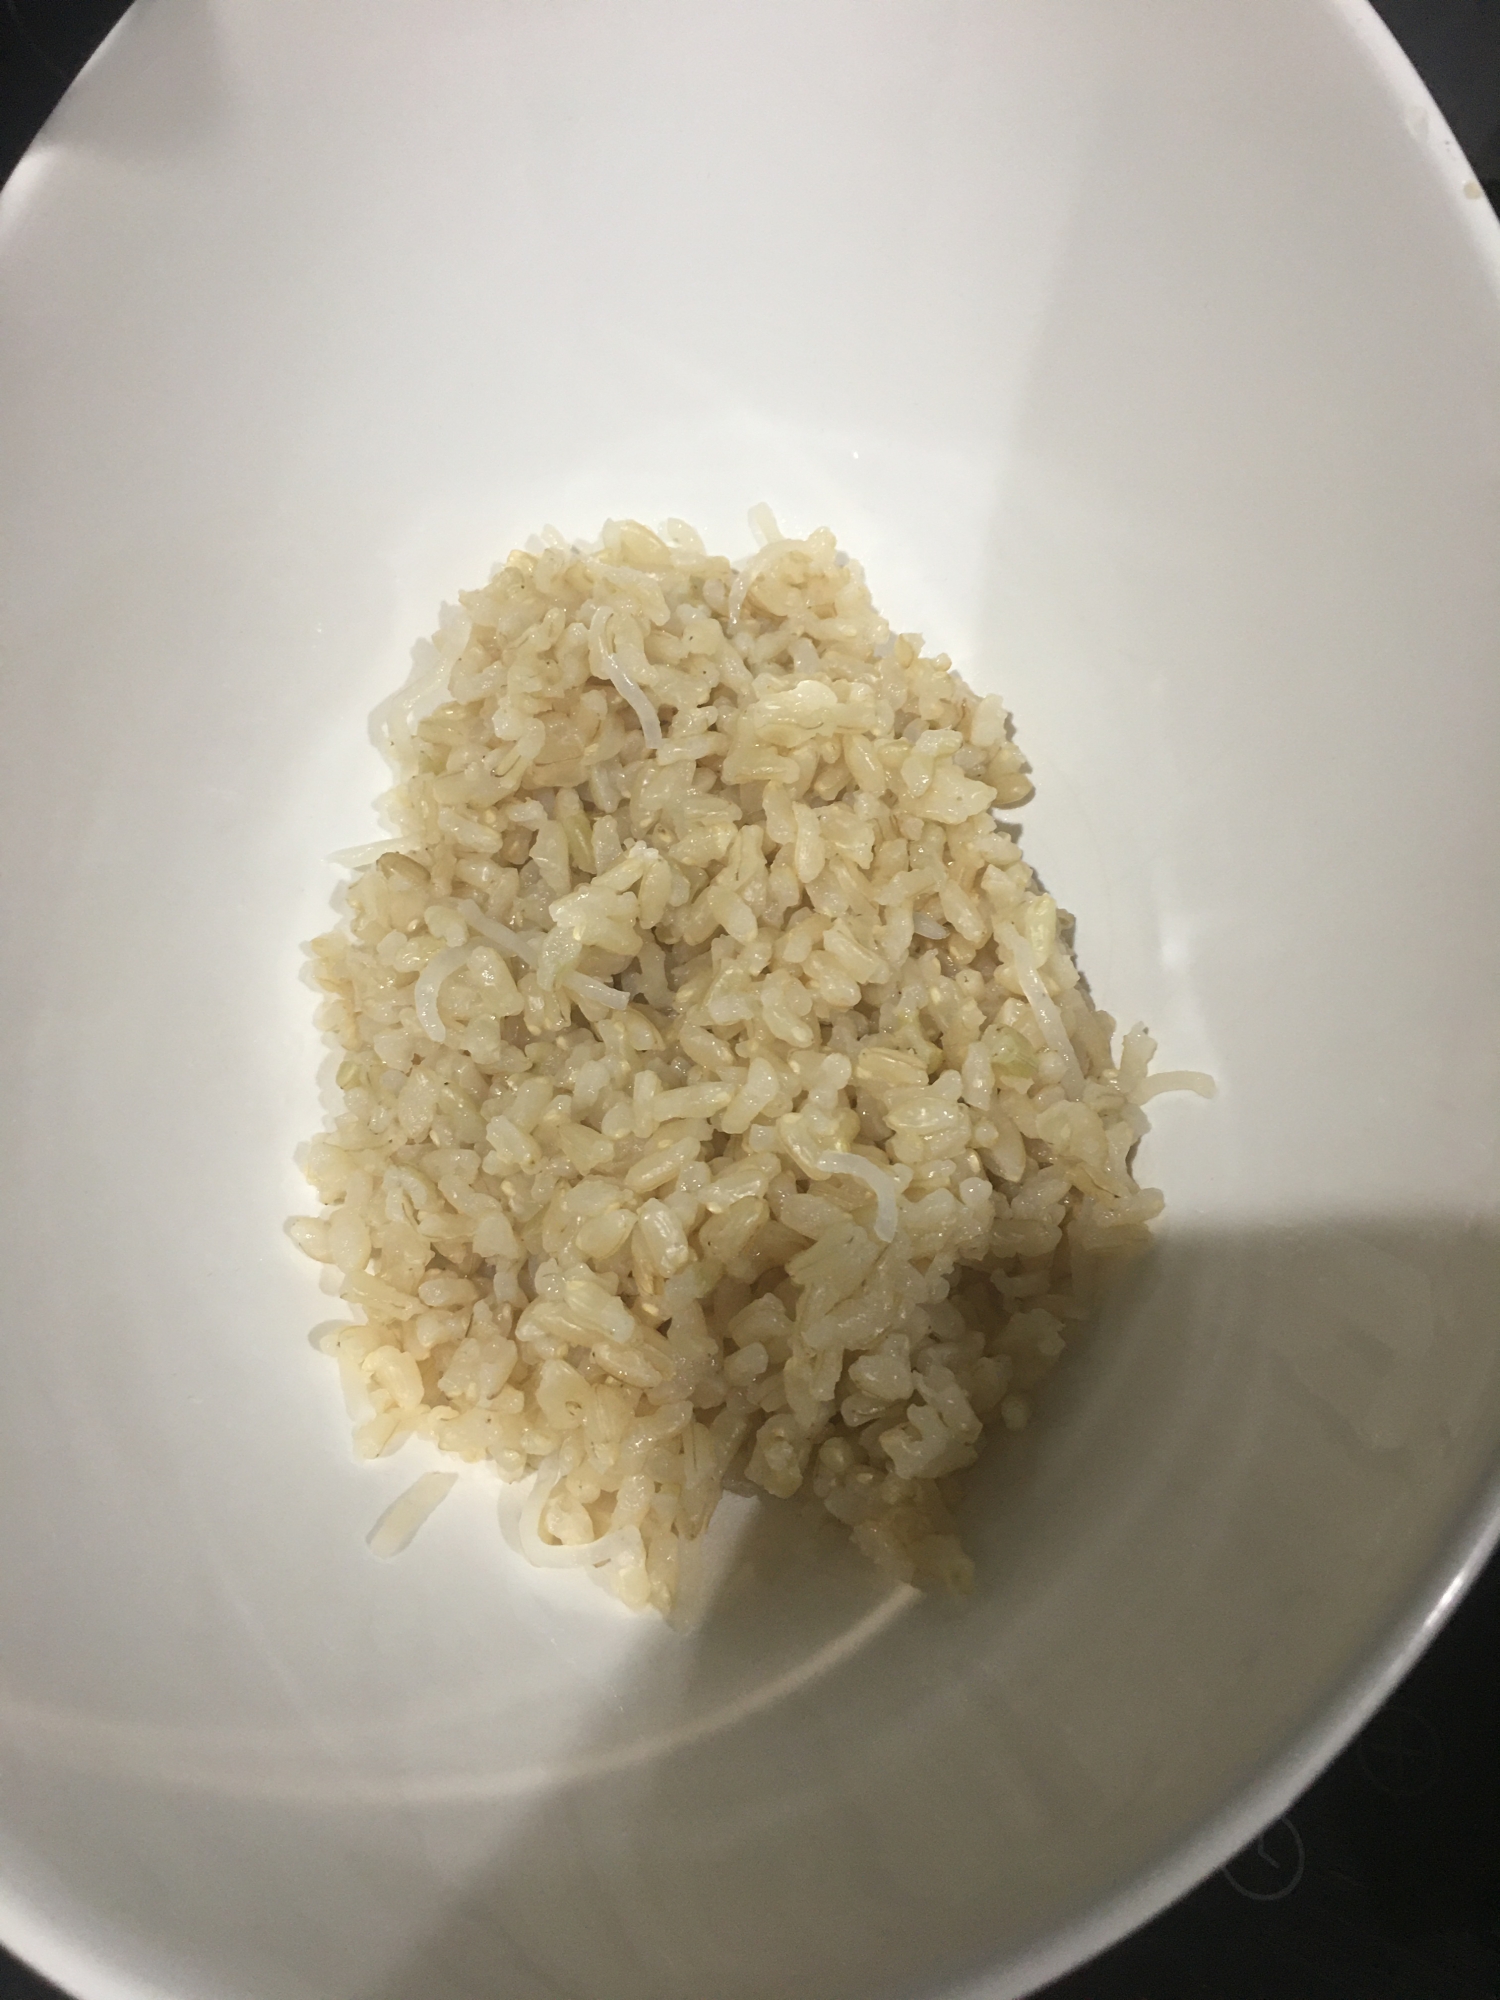 浸け置き要らず、ふっくら玄米